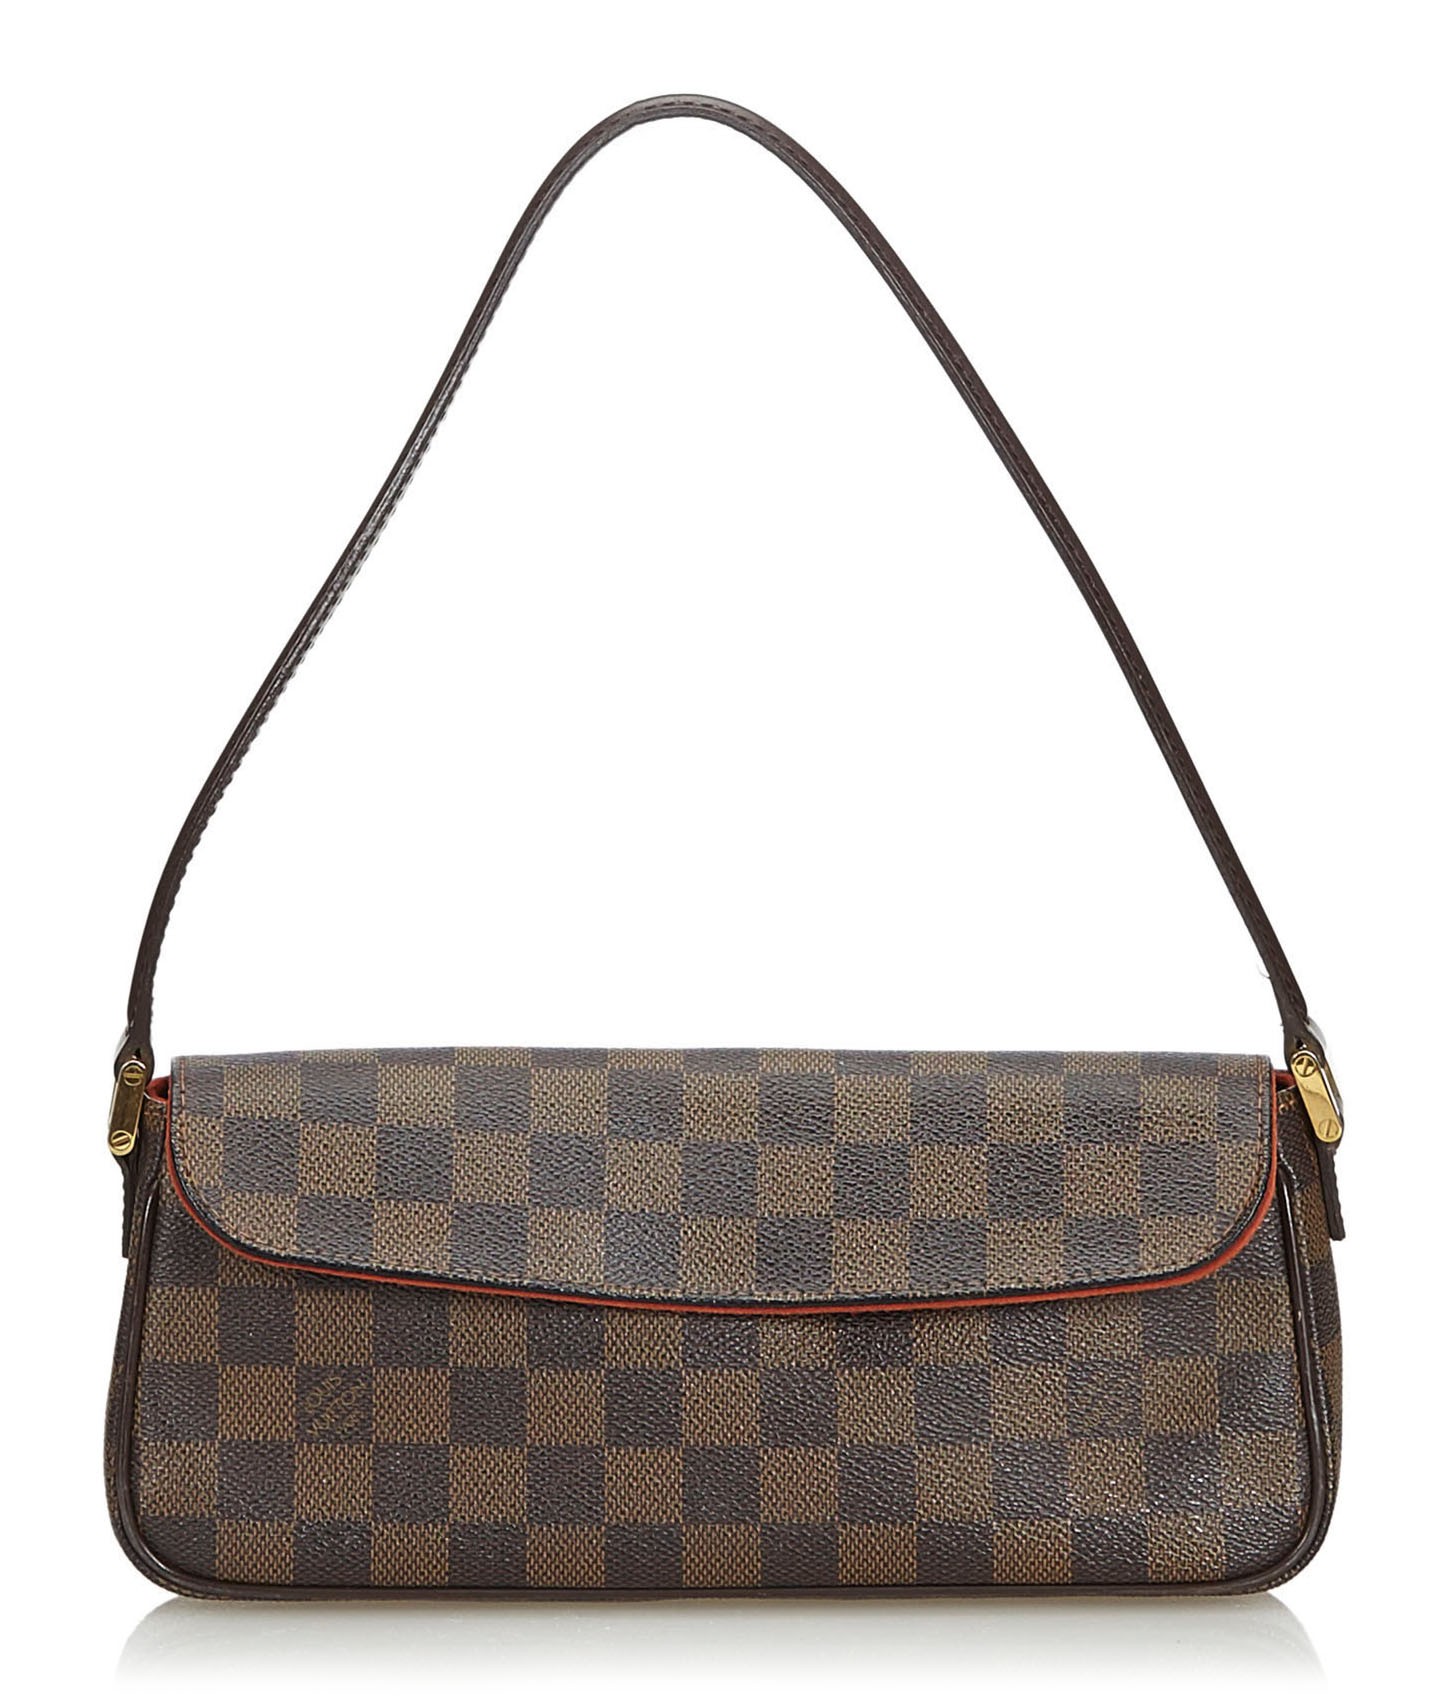 Louis Vuitton, bag / shoulder bag, Damier Ebene canvas, leather, Paris,  France. Vintage Clothing & Accessories - Auctionet